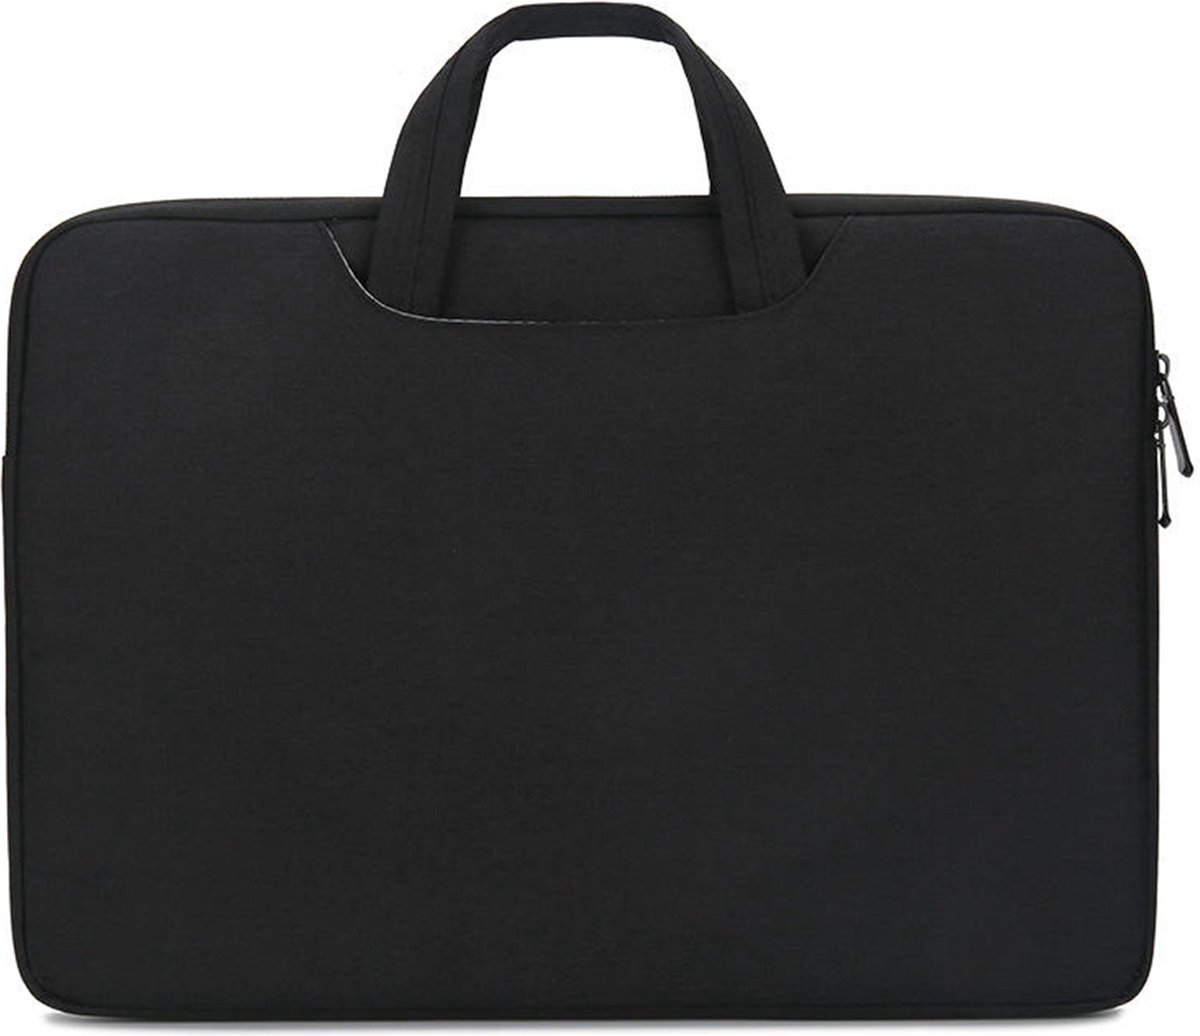 Case2go - Laptoptas geschikt voor Dell Inspiron - Laptophoes 13 inch - Zwart